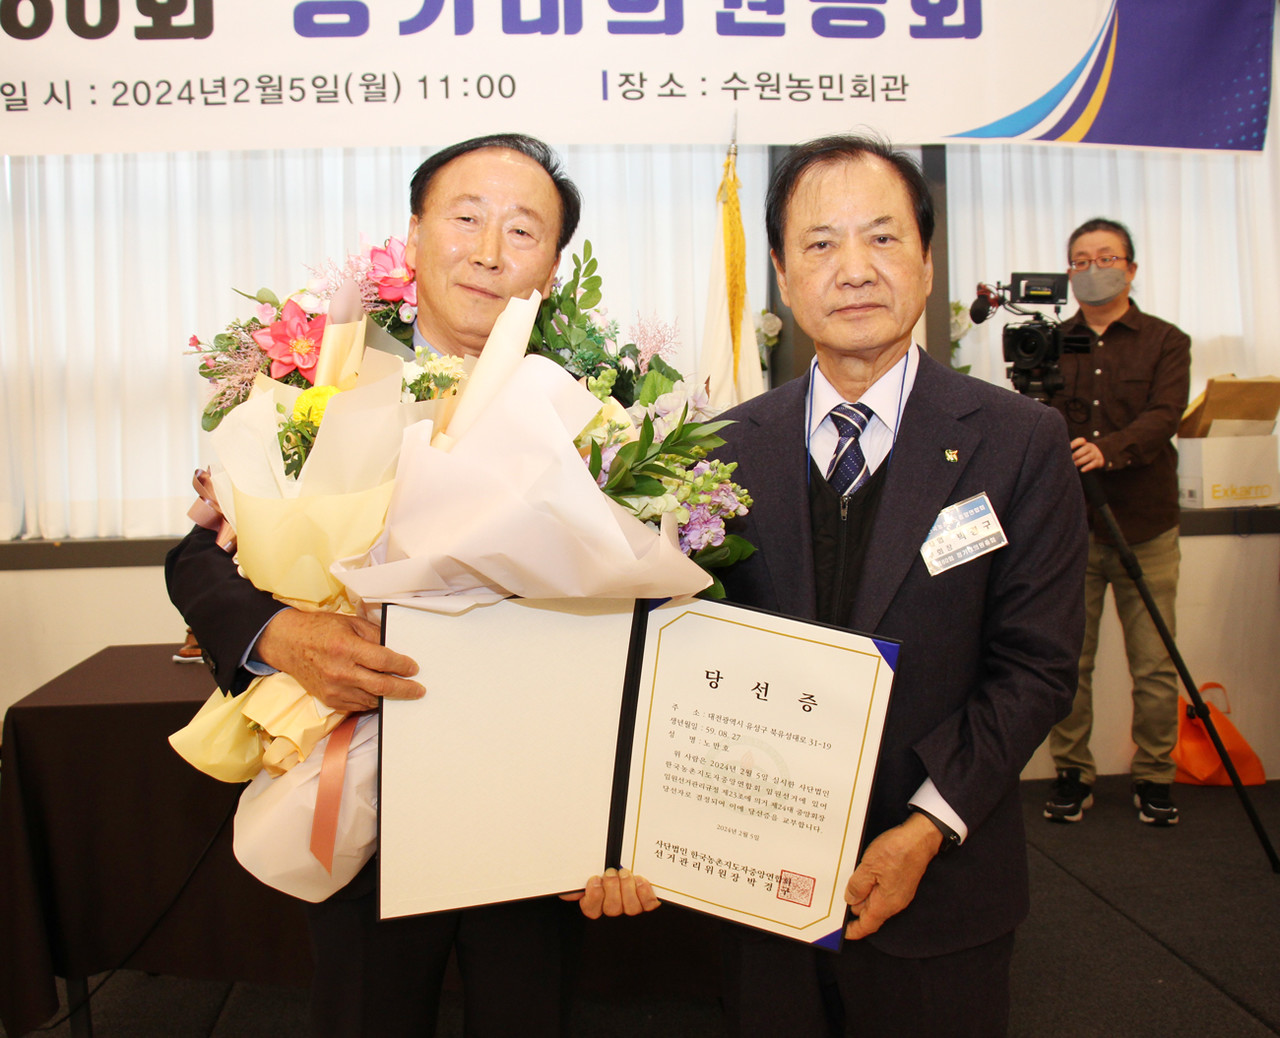 지난 5일 제24대 한국농촌지도자중앙연합회 임원선거에서 노만호 후보(왼쪽)가 당선됐다. 